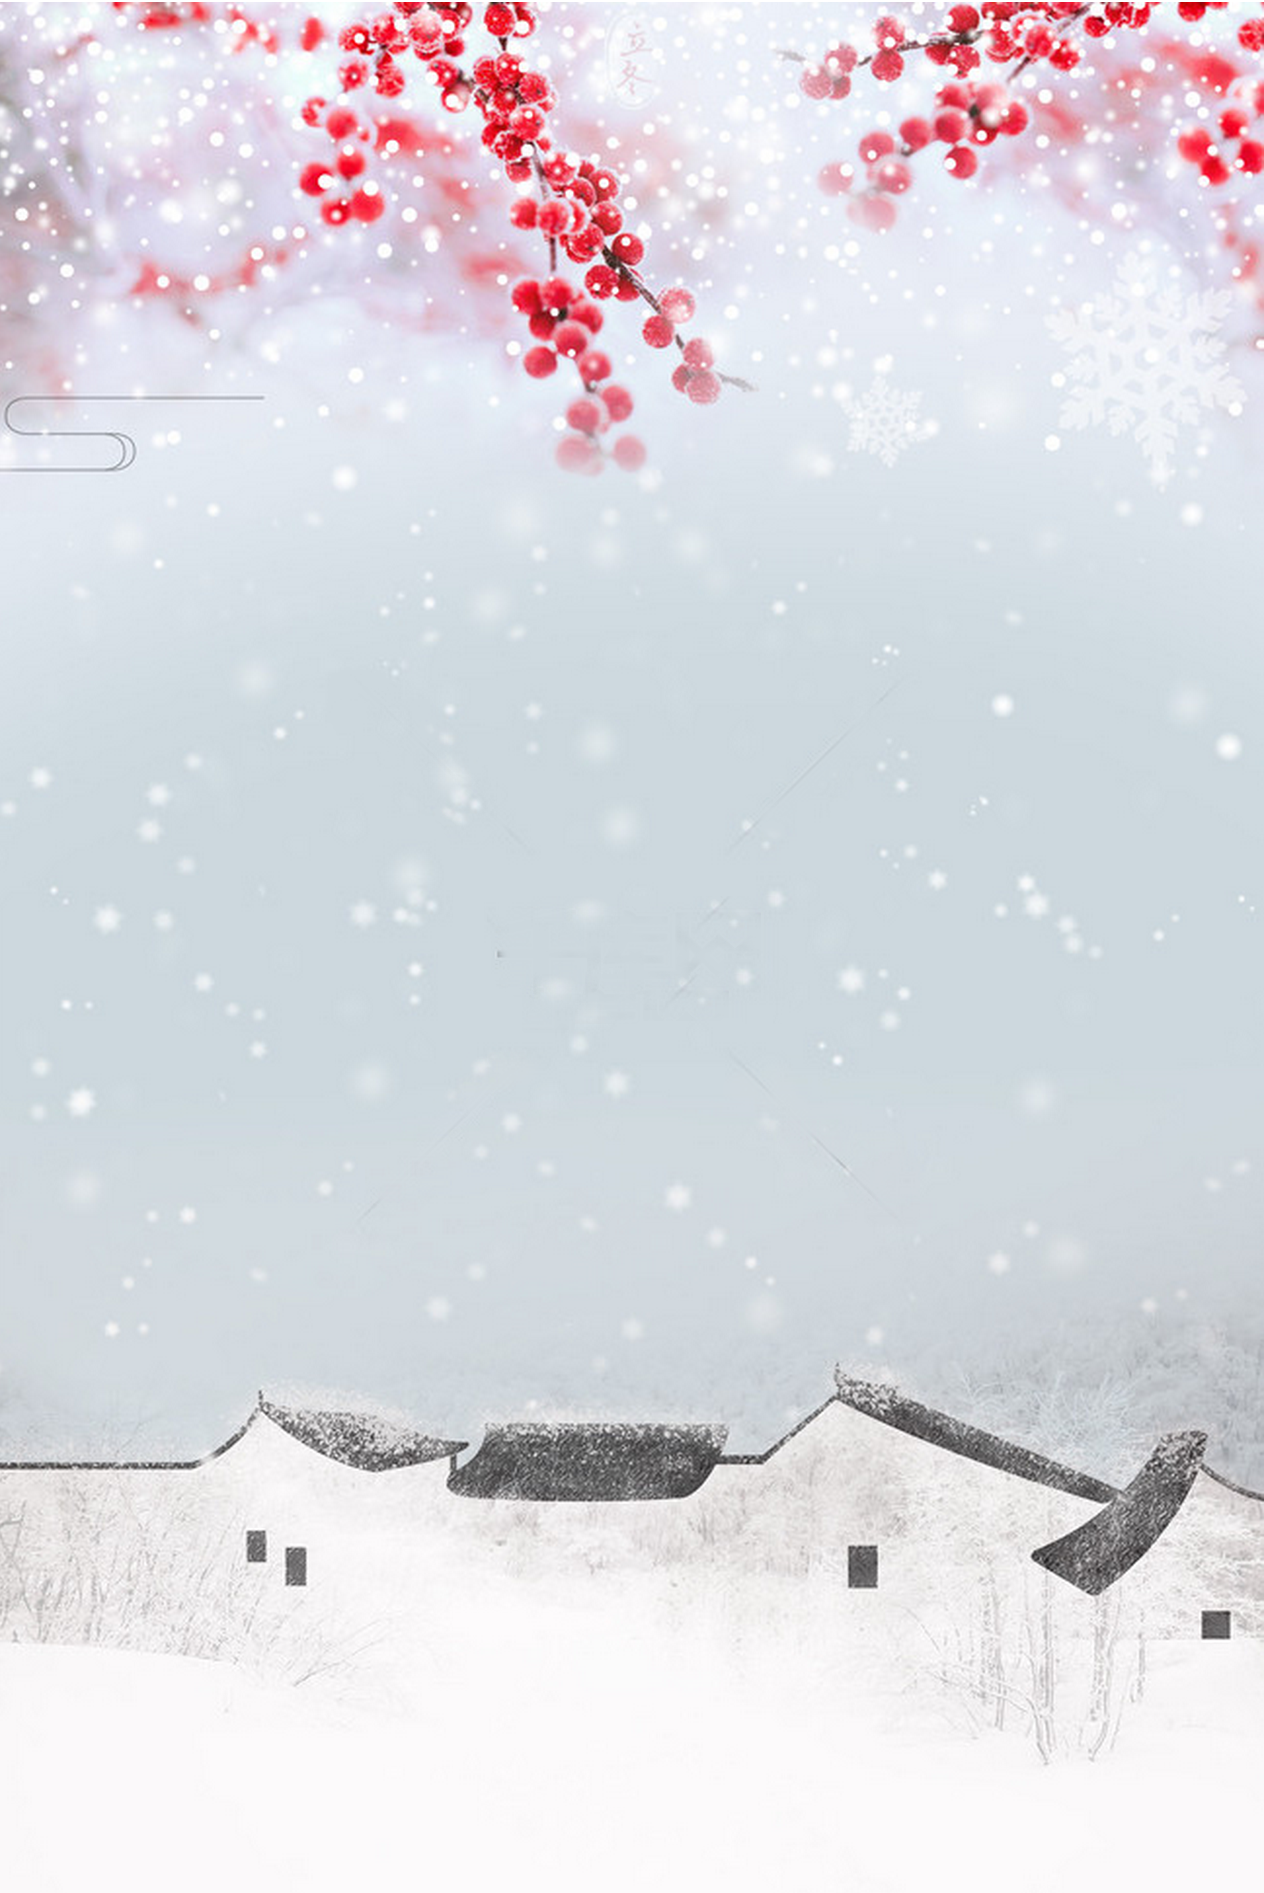 立冬腊梅小清新文艺中国风元素背景图片 下雪啦 喜欢的中国风感觉